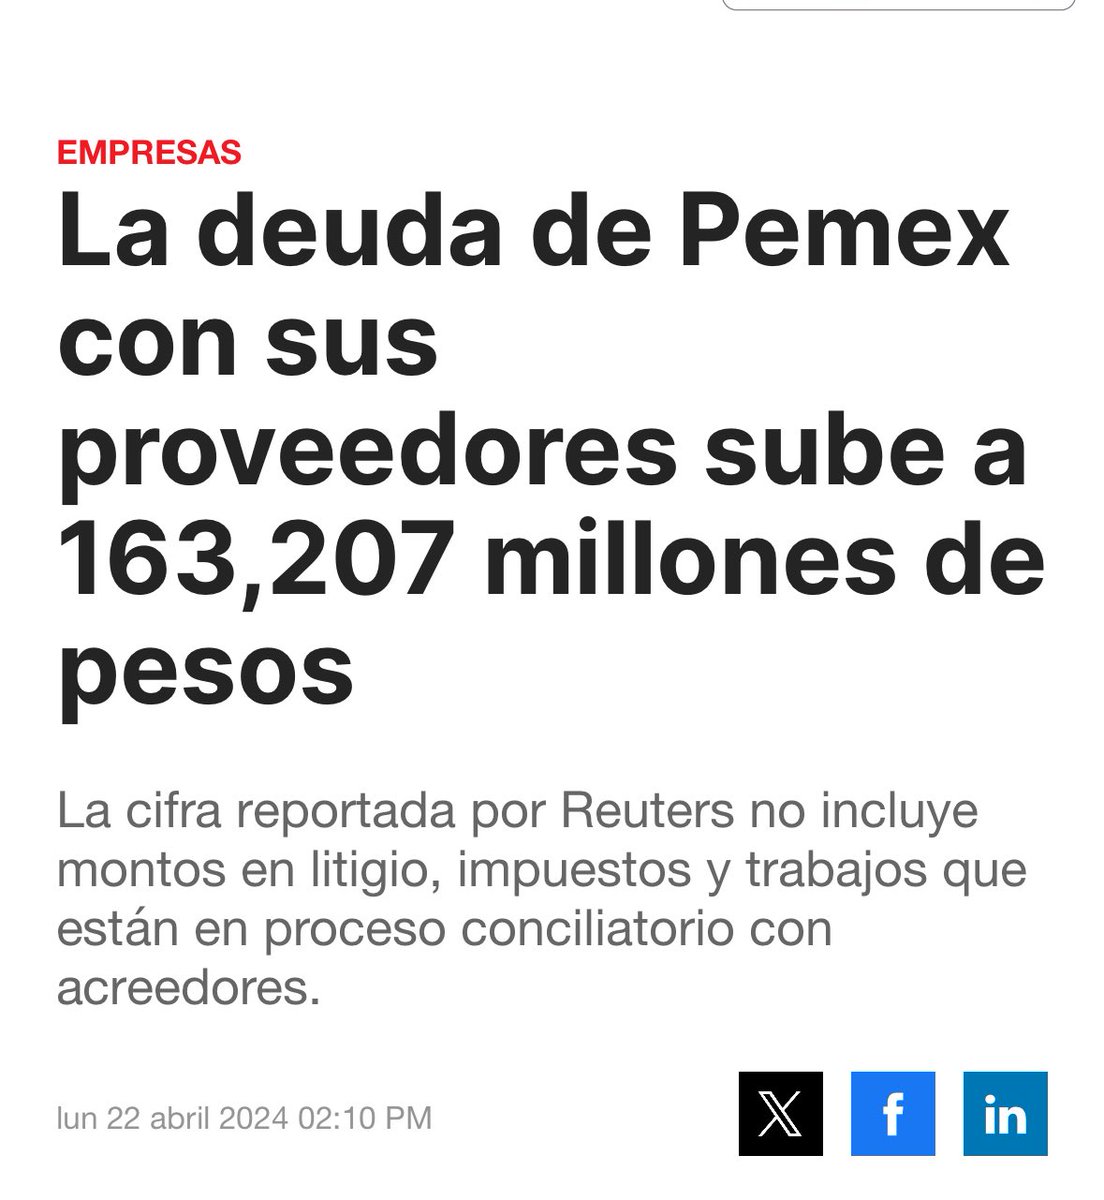 Otra bomba q va heredar el actual gobierno al próximo @GobiernoMX : la deuda con proveedores de @Pemex